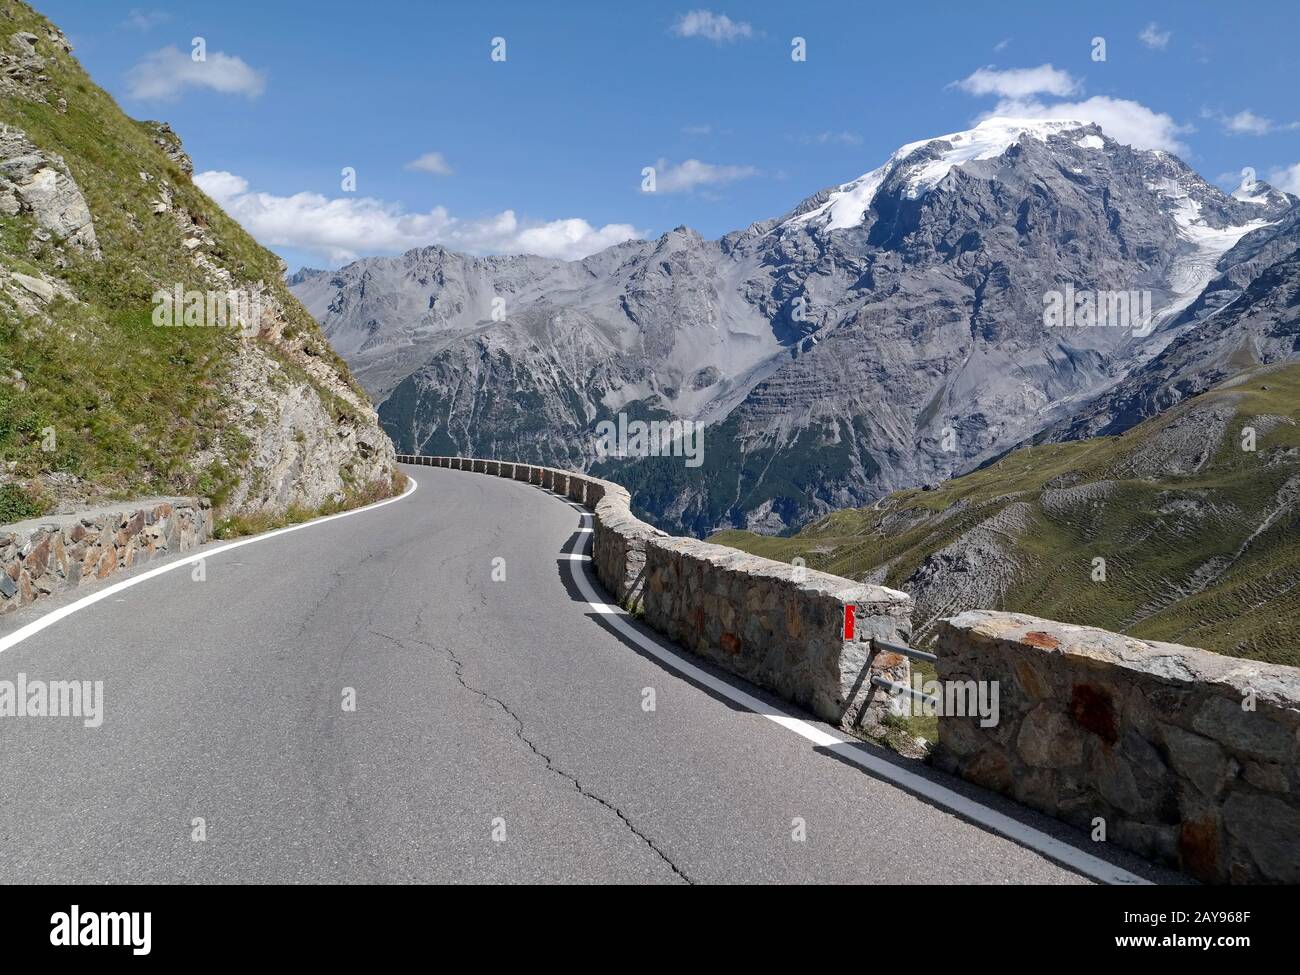 Carretera en los Alpes Stilfser Joch serpentines Foto de stock